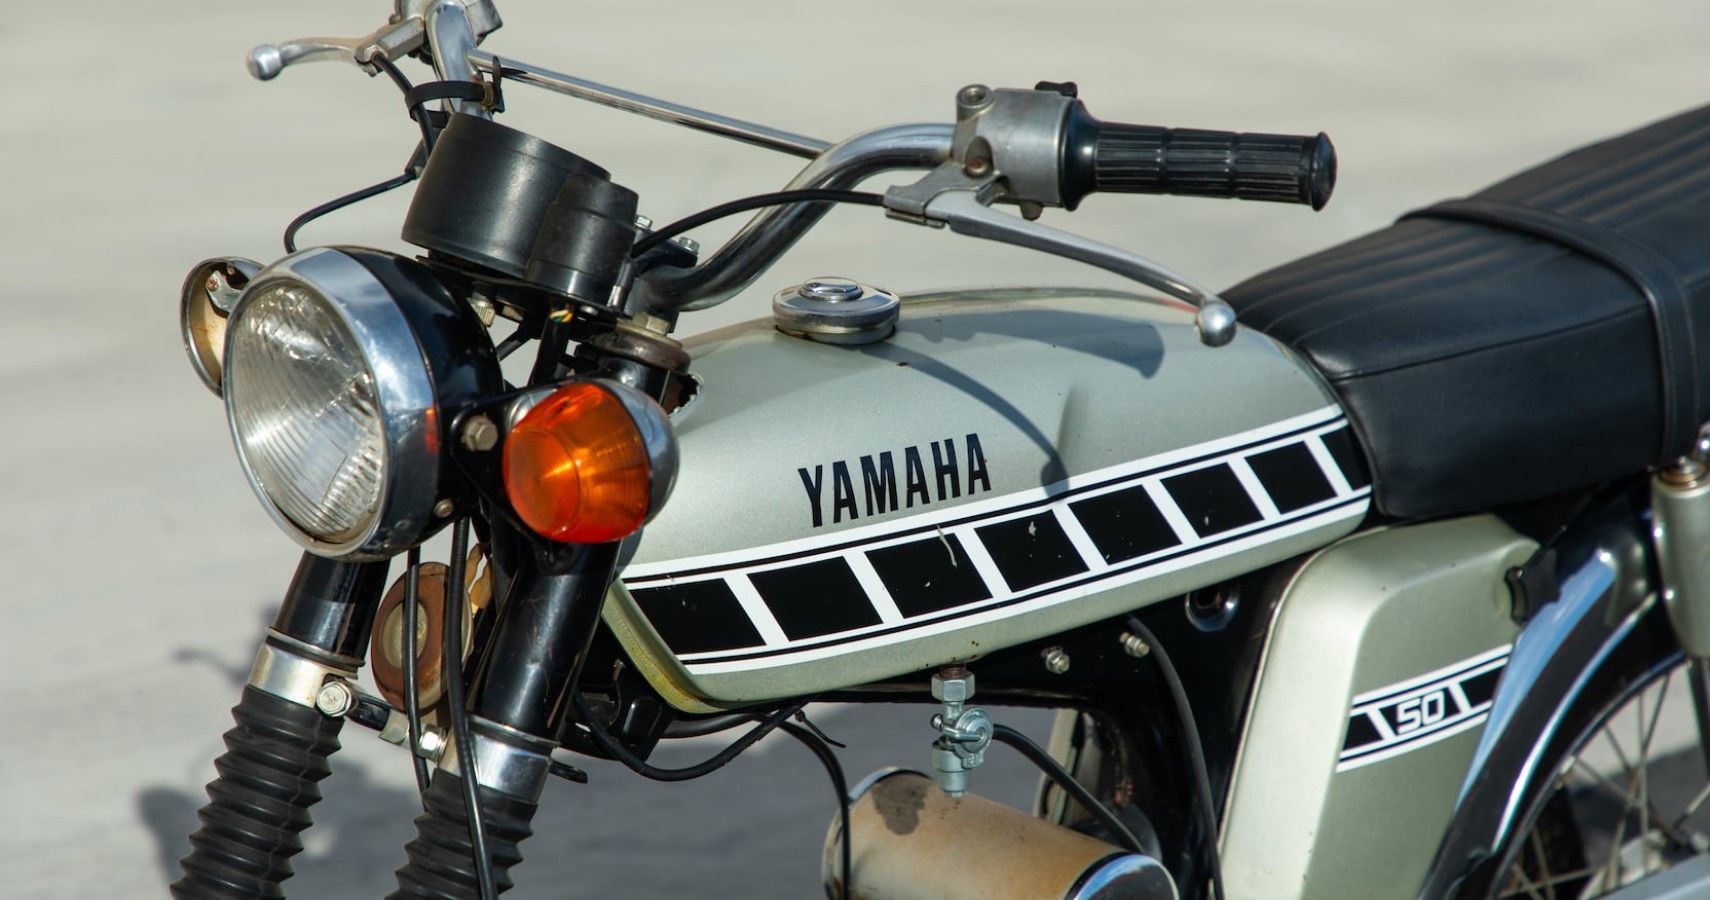 Yamaha FS1-E tank close-up view